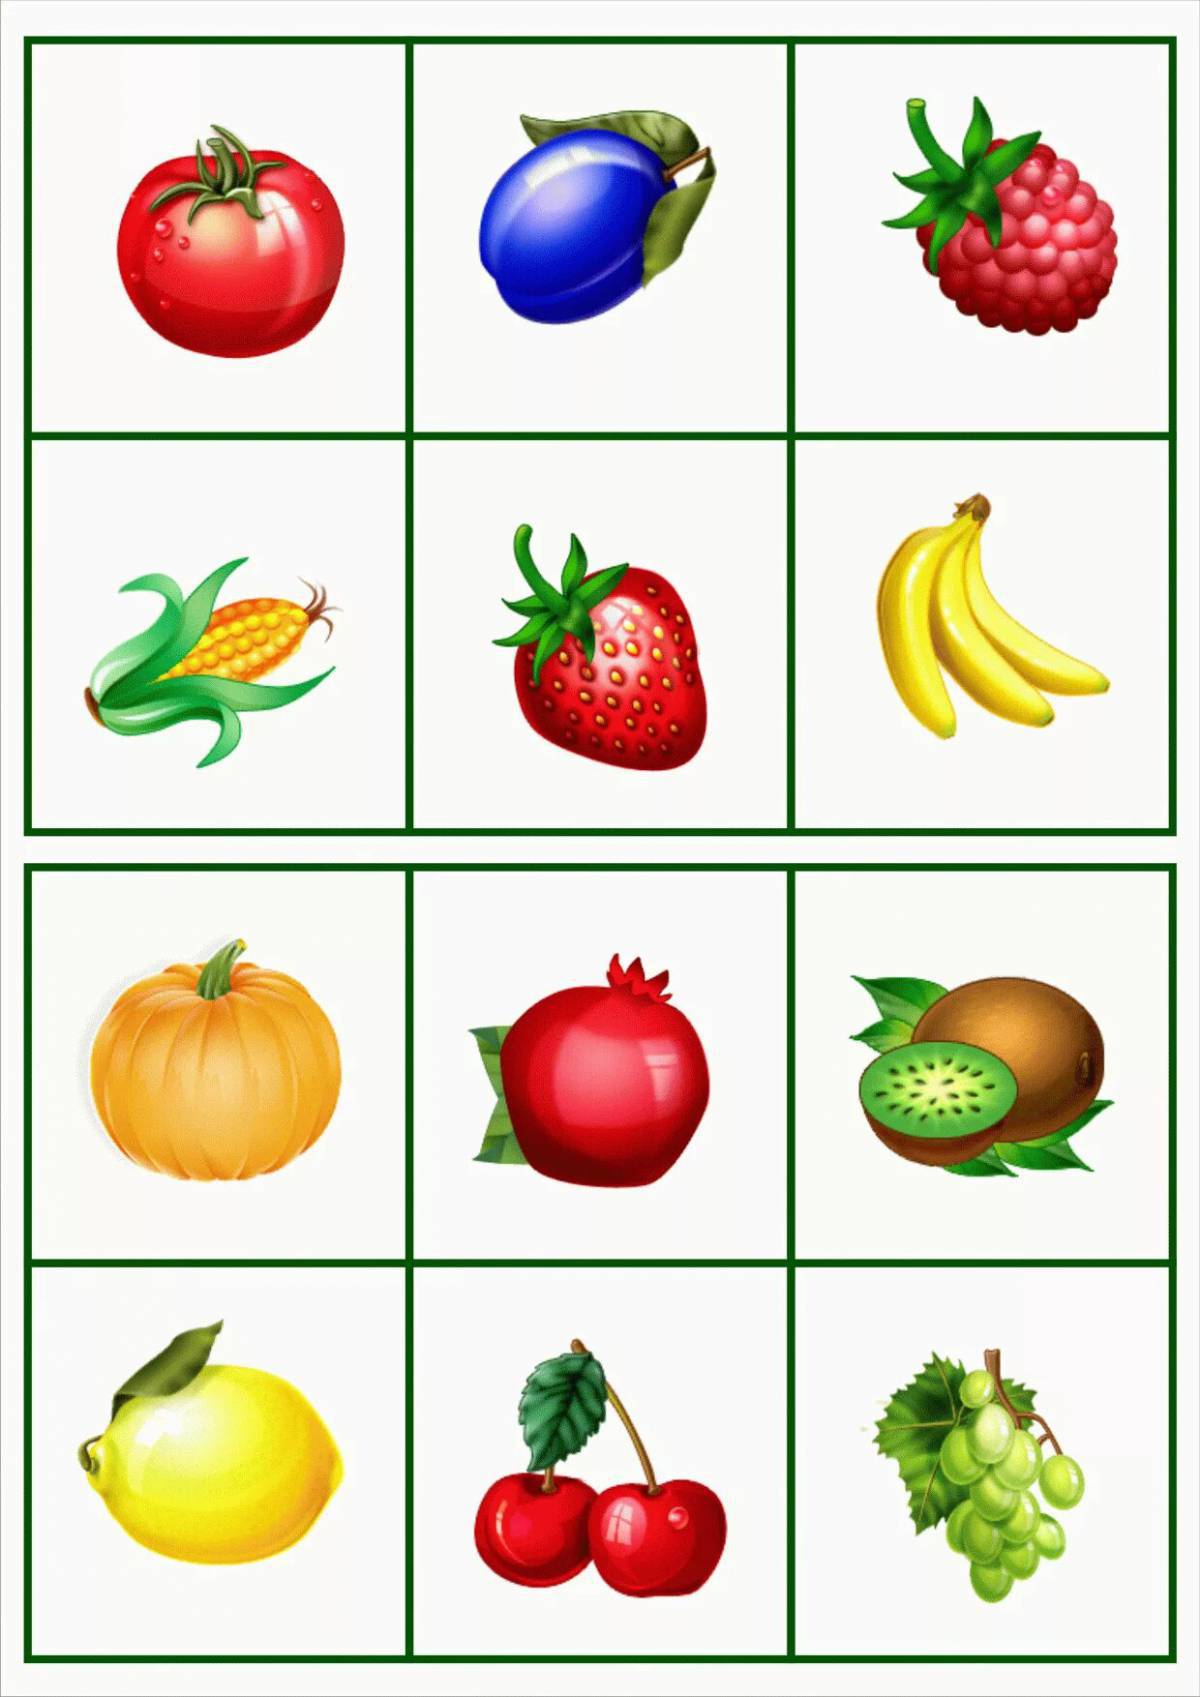 картинки фрукты для детей, карточки домана скачать